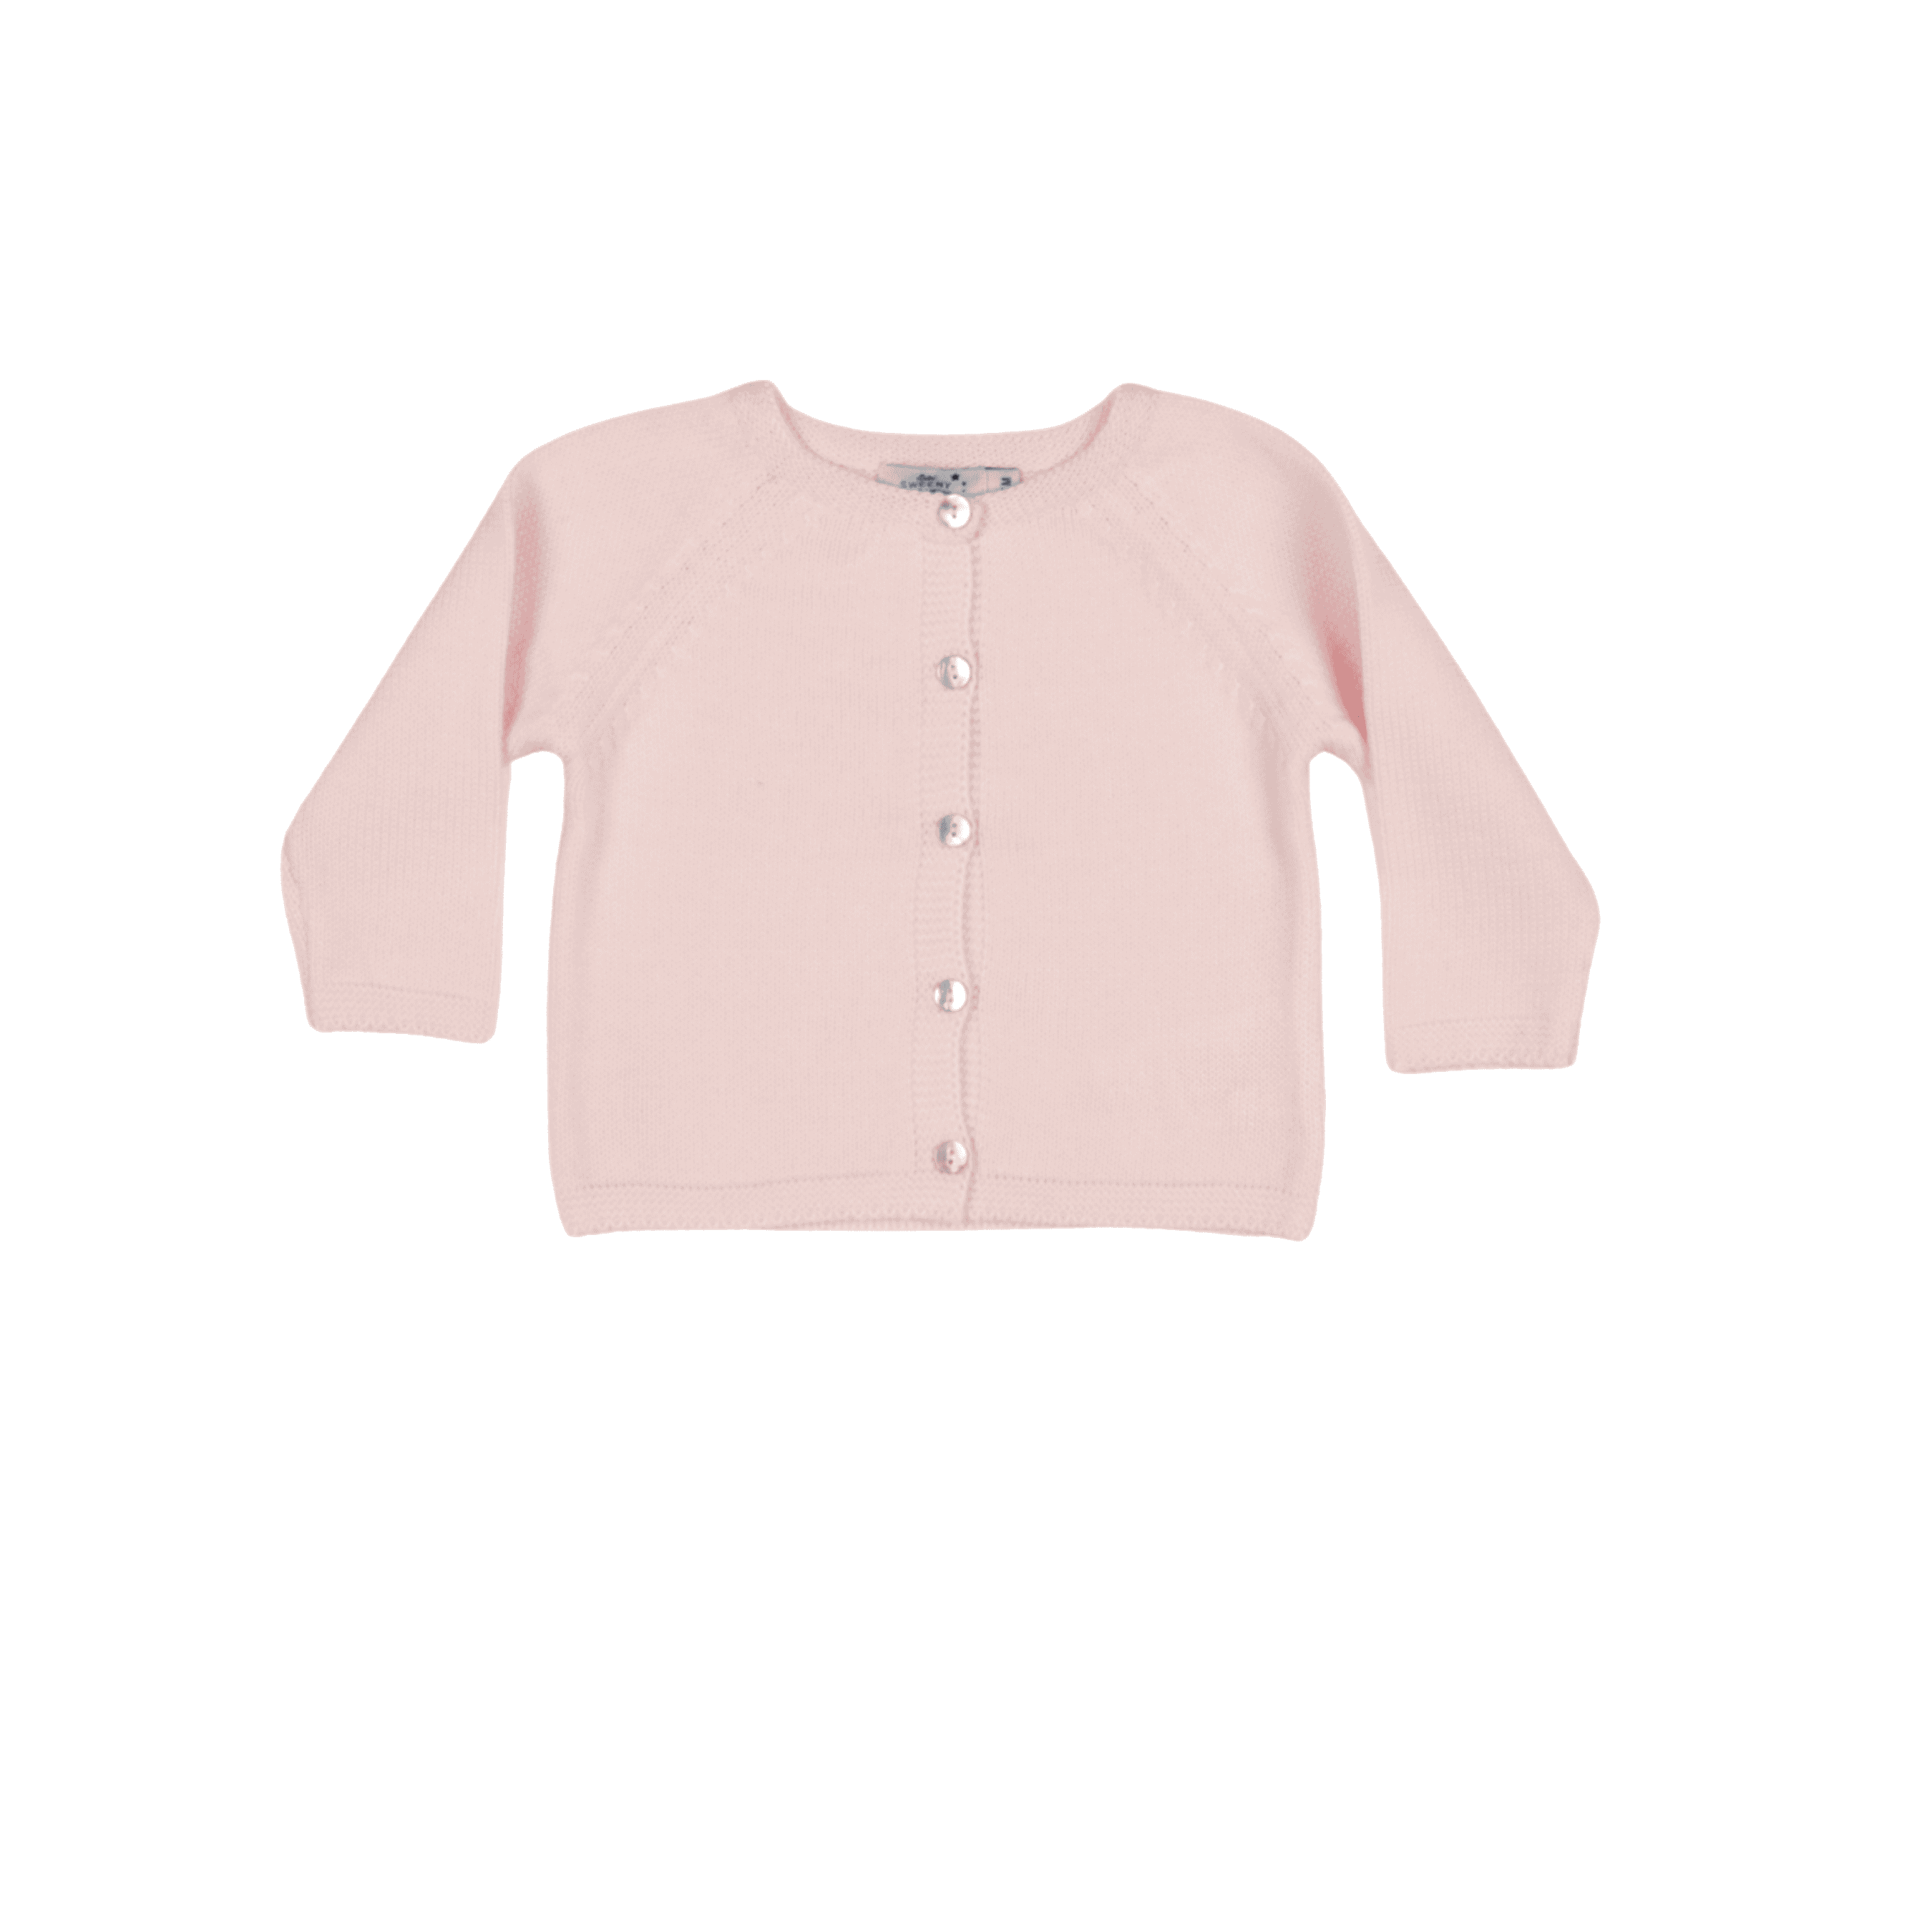 Girls Pink Organic Cotton Knit Cardigan